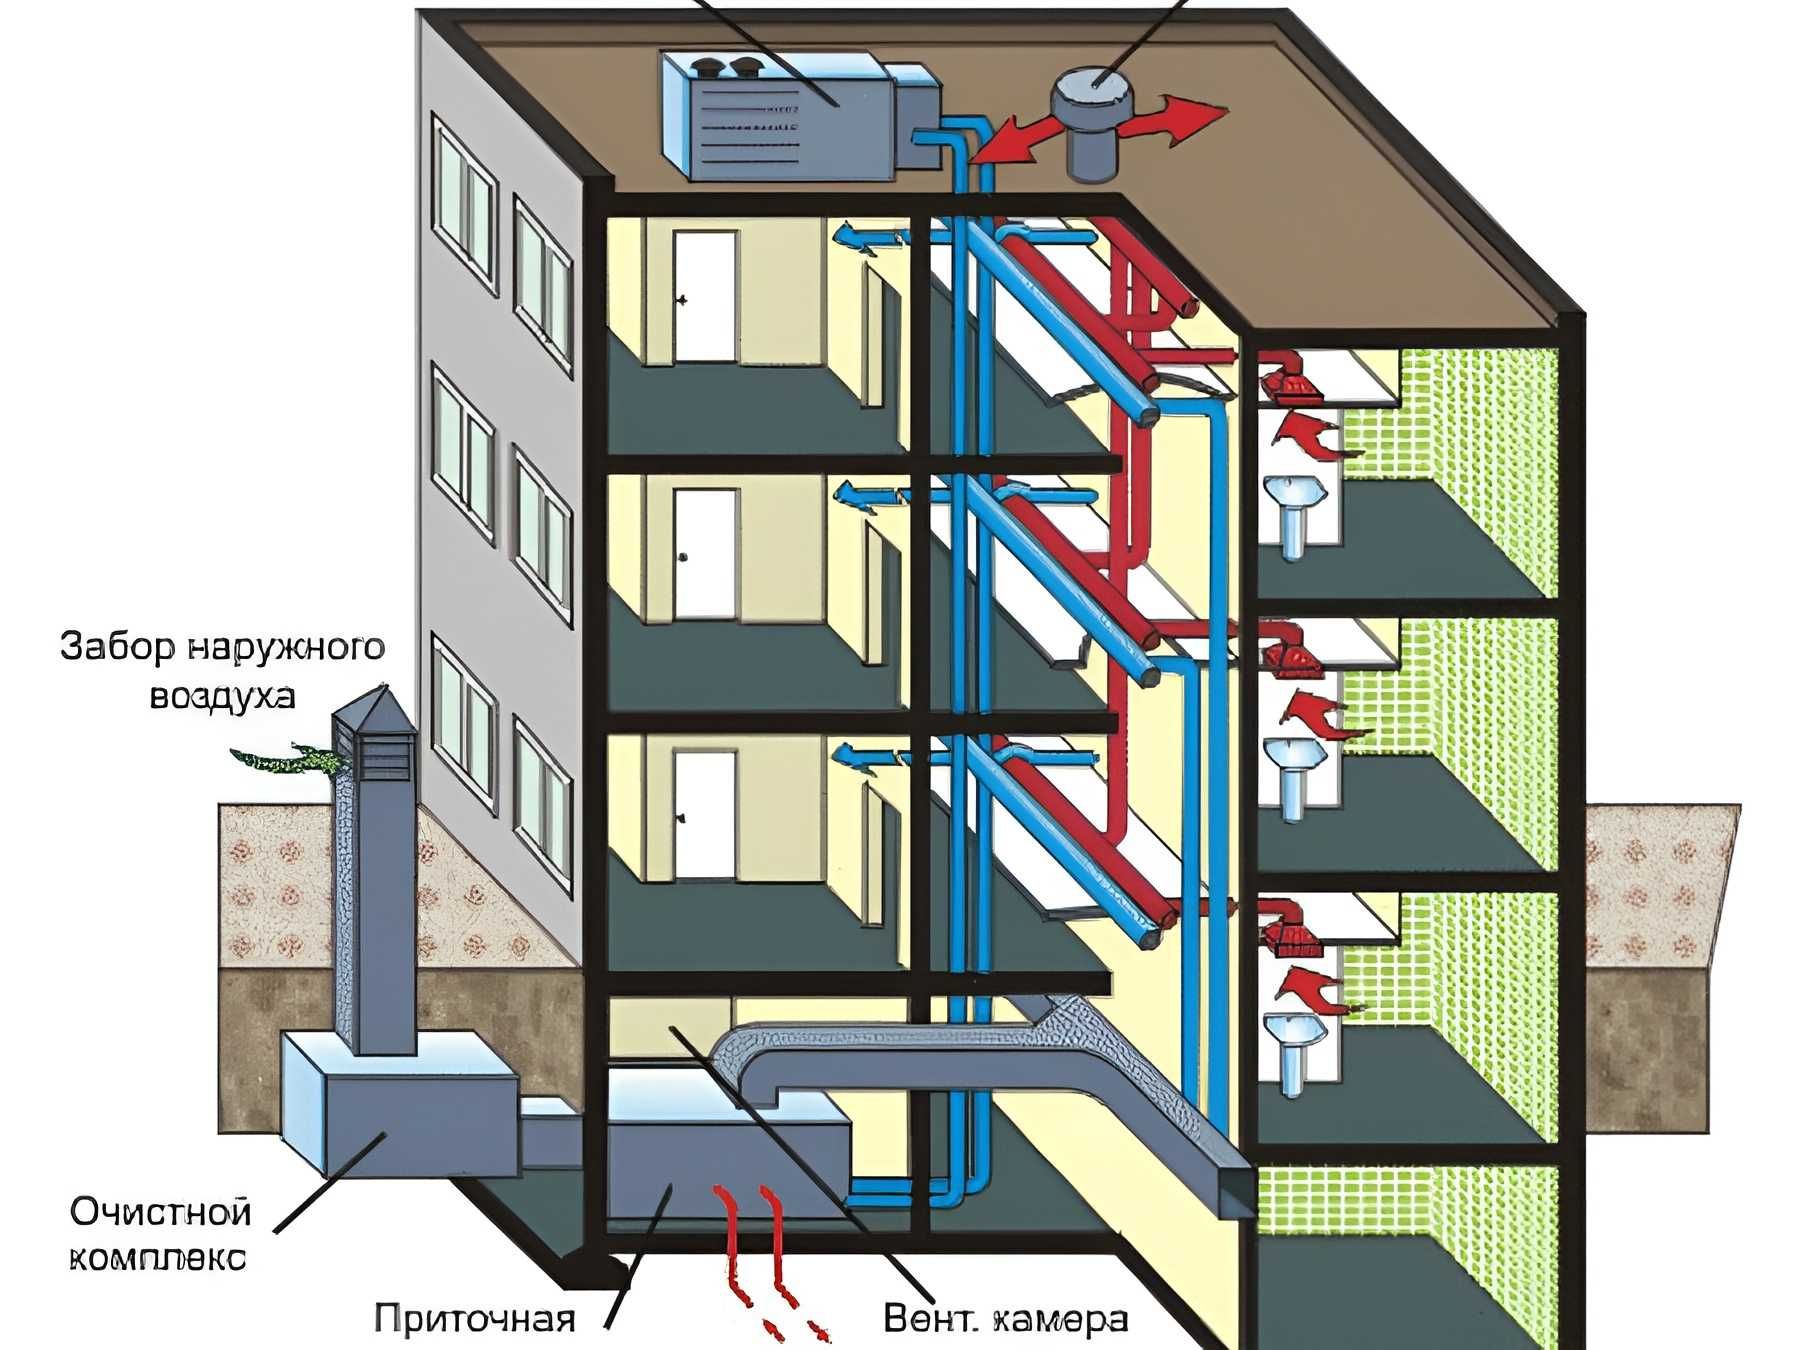 В многоэтажном доме между этажами одинаковое. Вытяжная приточная приточно-вытяжная система вентиляции схема. Приточно-вытяжная вентиляция в многоквартирном доме. Система приточно-вытяжной вентиляции в многоквартирном доме. Система вентиляции в многоквартирном панельном доме схема.